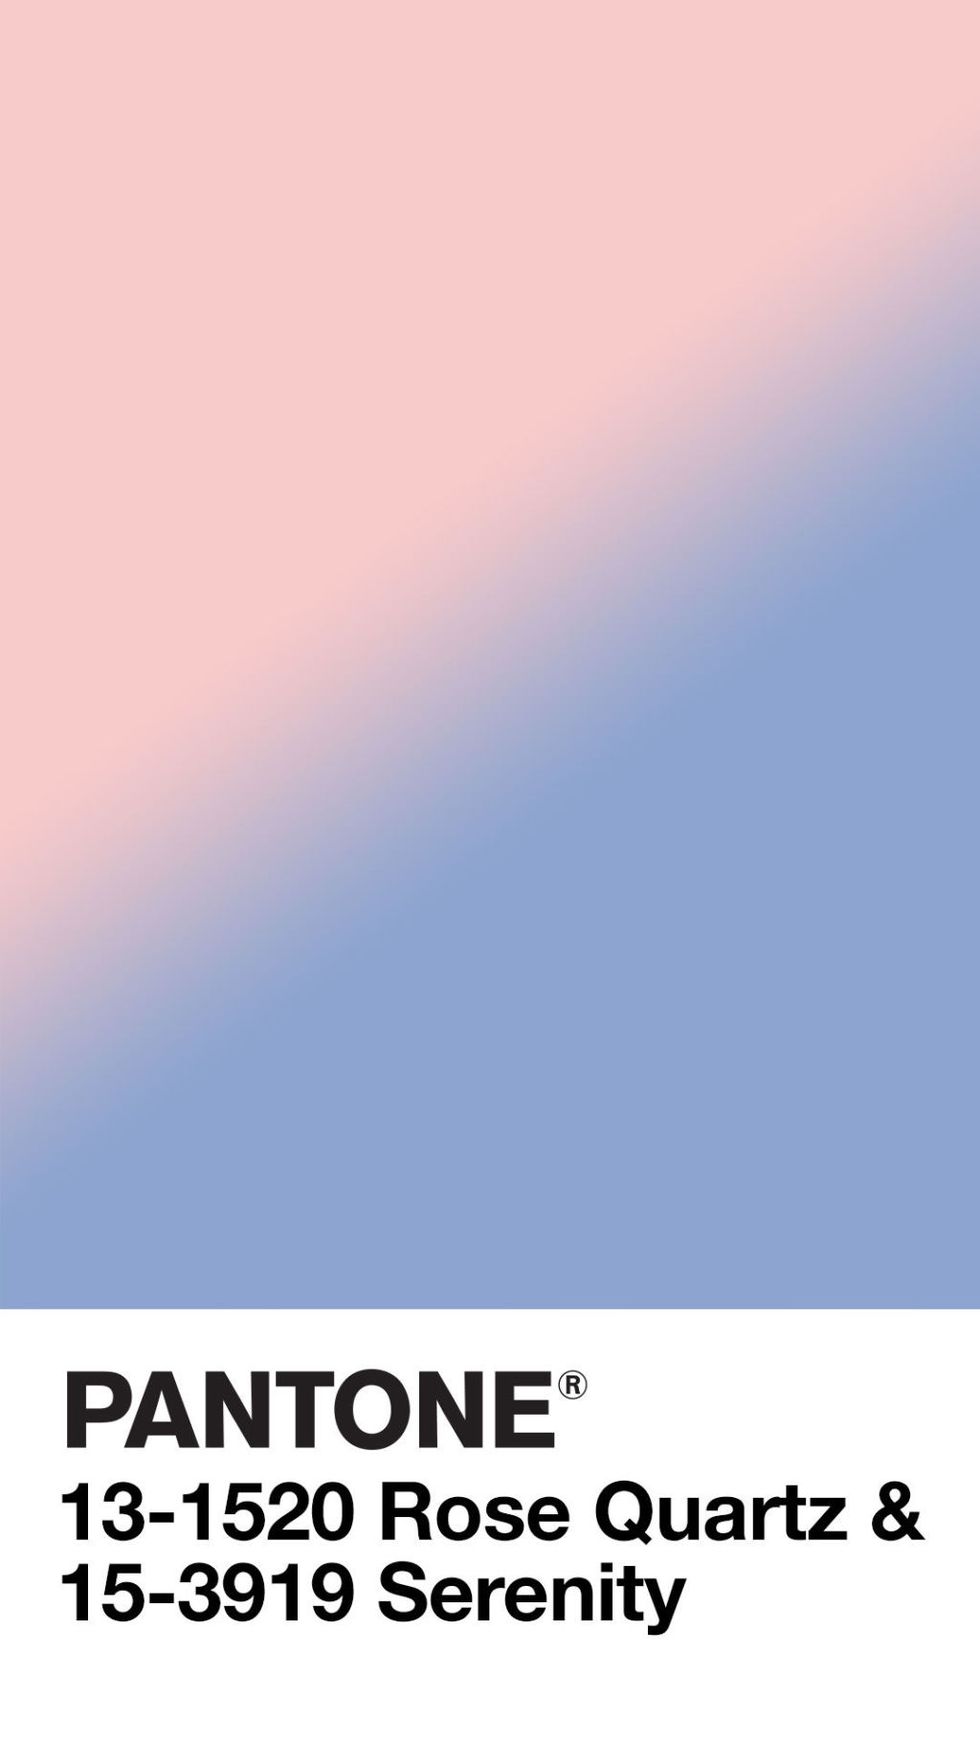 <p>In 2016 werden er voor het eerst twee kleuren verkozen tot Color of the Year. De roze en blauwe tint zorgden samen voor zowel connectie en welzijn als rust –<span class="redactor-invisible-space"></span> een verwijzing naar de onrust in de wereld met het oog op terrorisme, maar ook vanwege de opkomende <em data-redactor-tag="em" data-verified="redactor">gender blur</em>.</p>